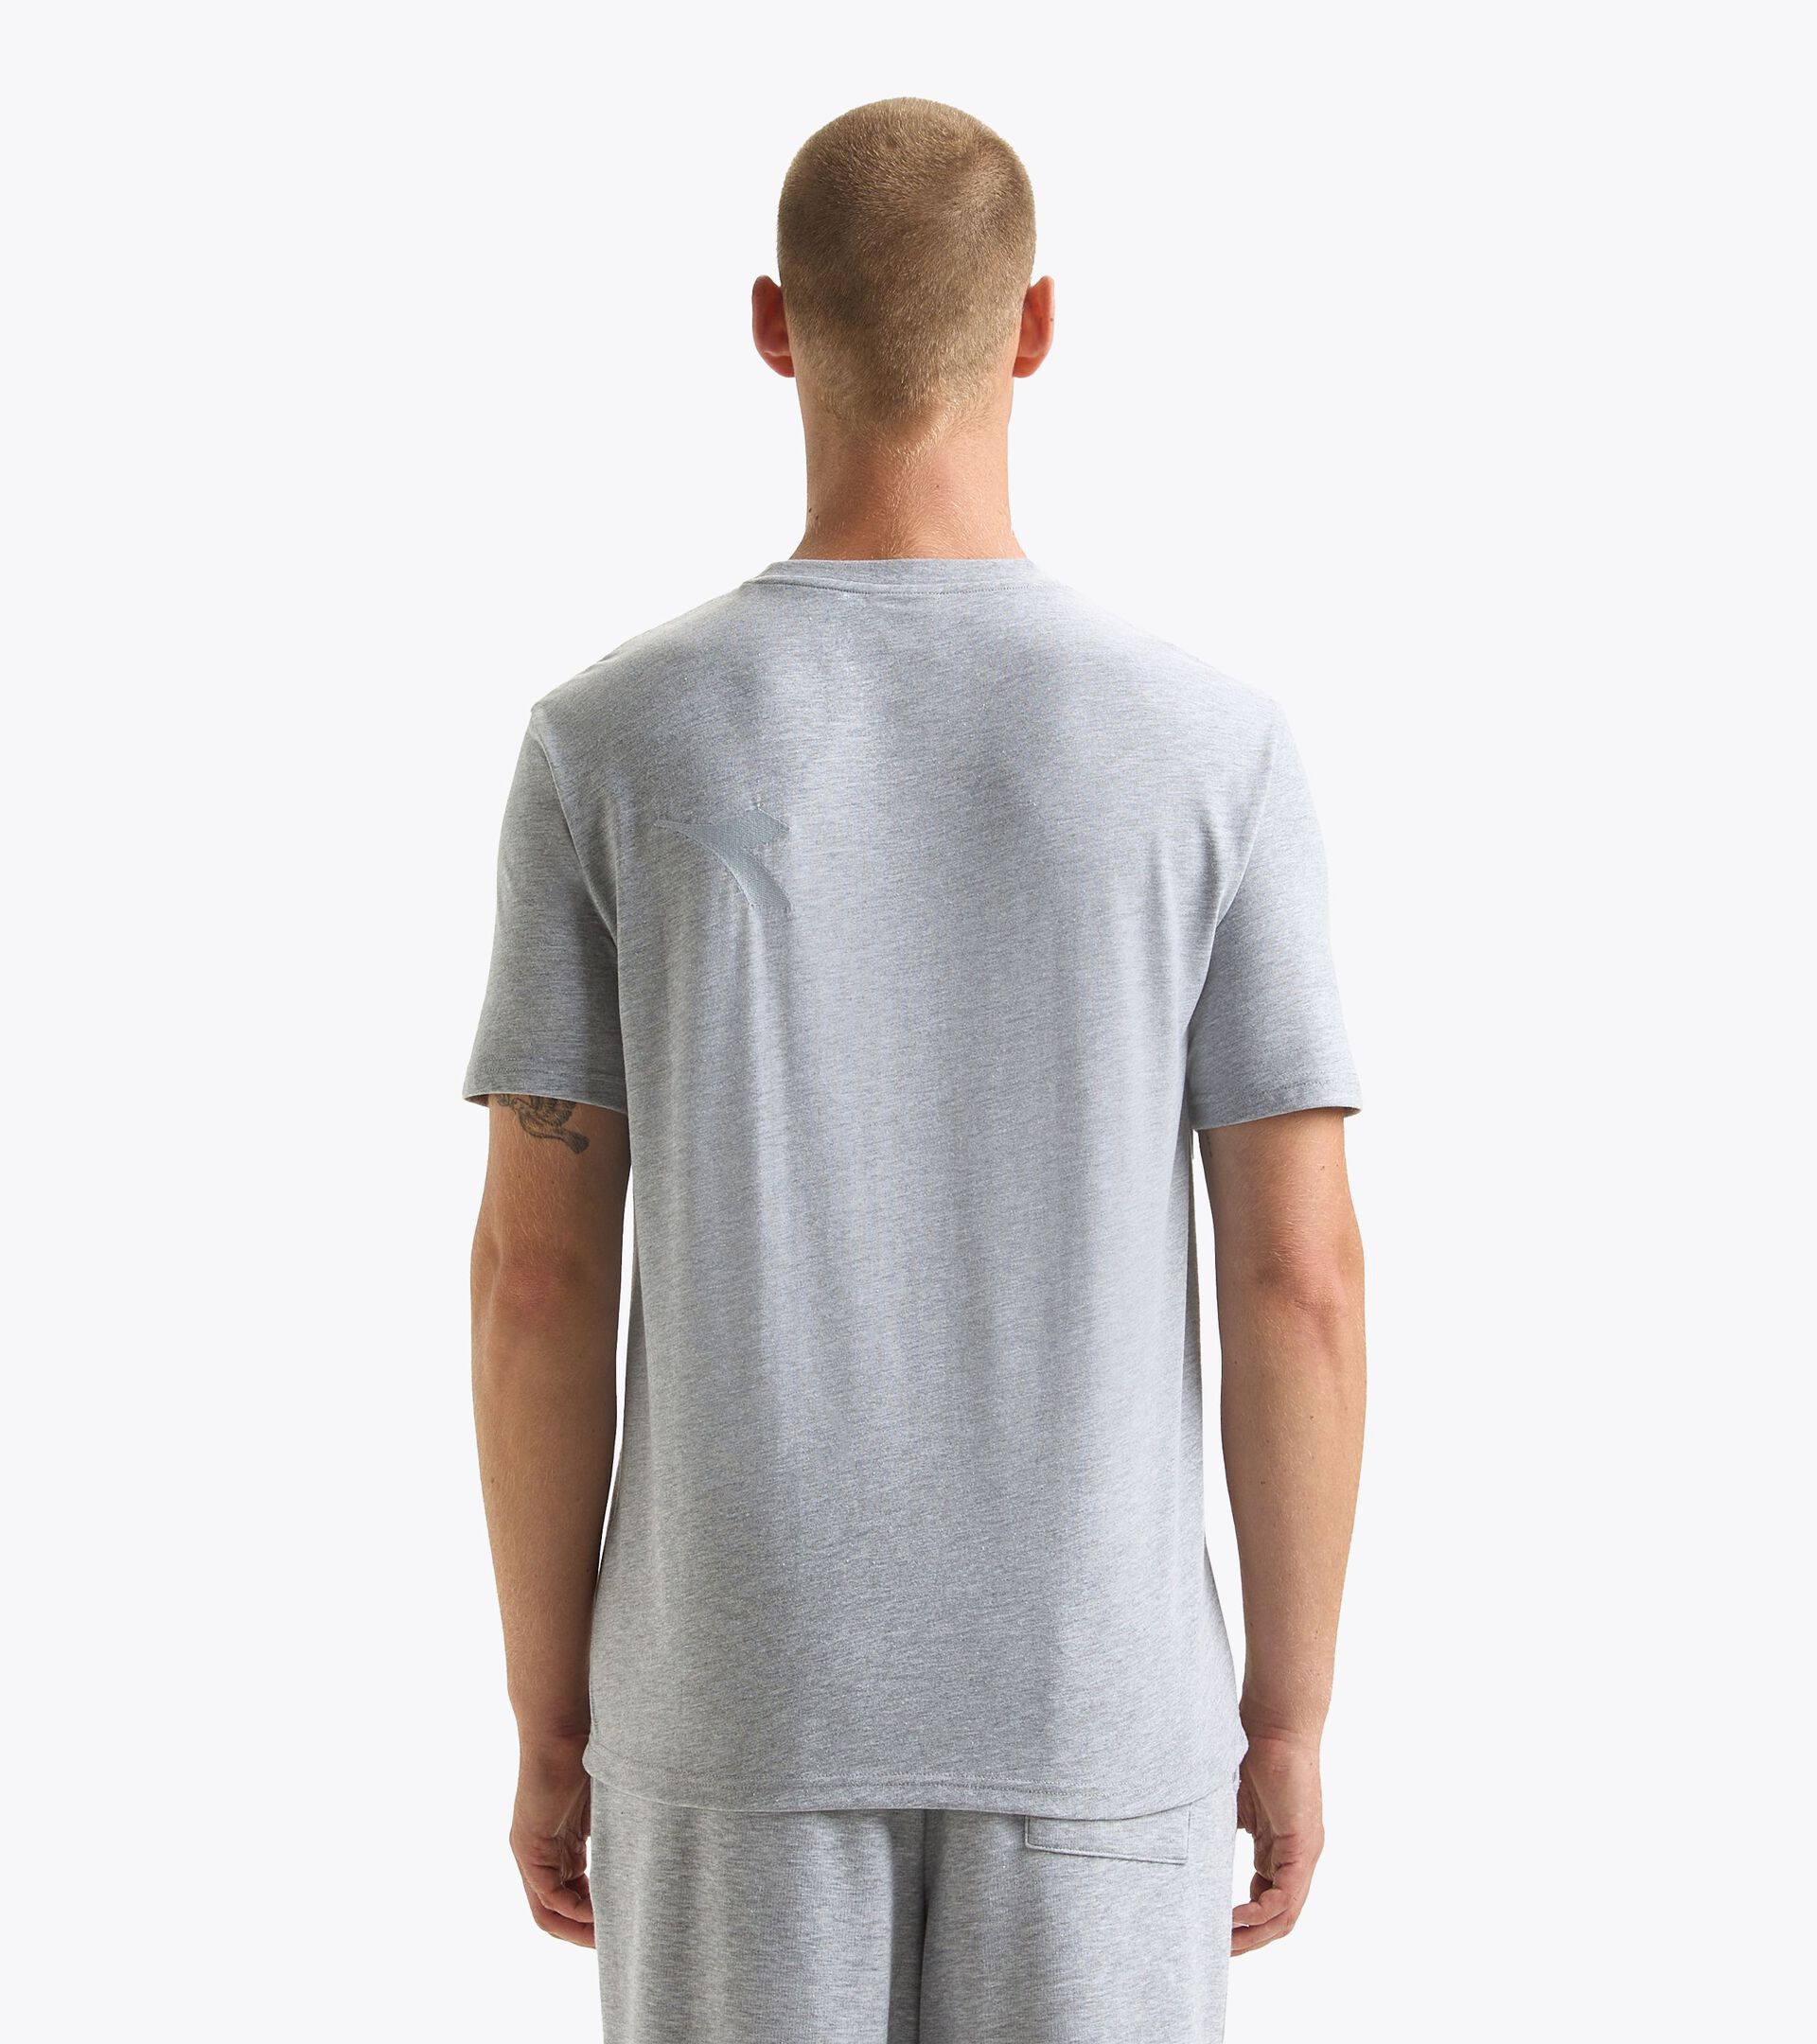 T-shirt - Gender Neutral T-SHIRT SS ATHL. LOGO GRATTE CIEL MELANGE - Diadora